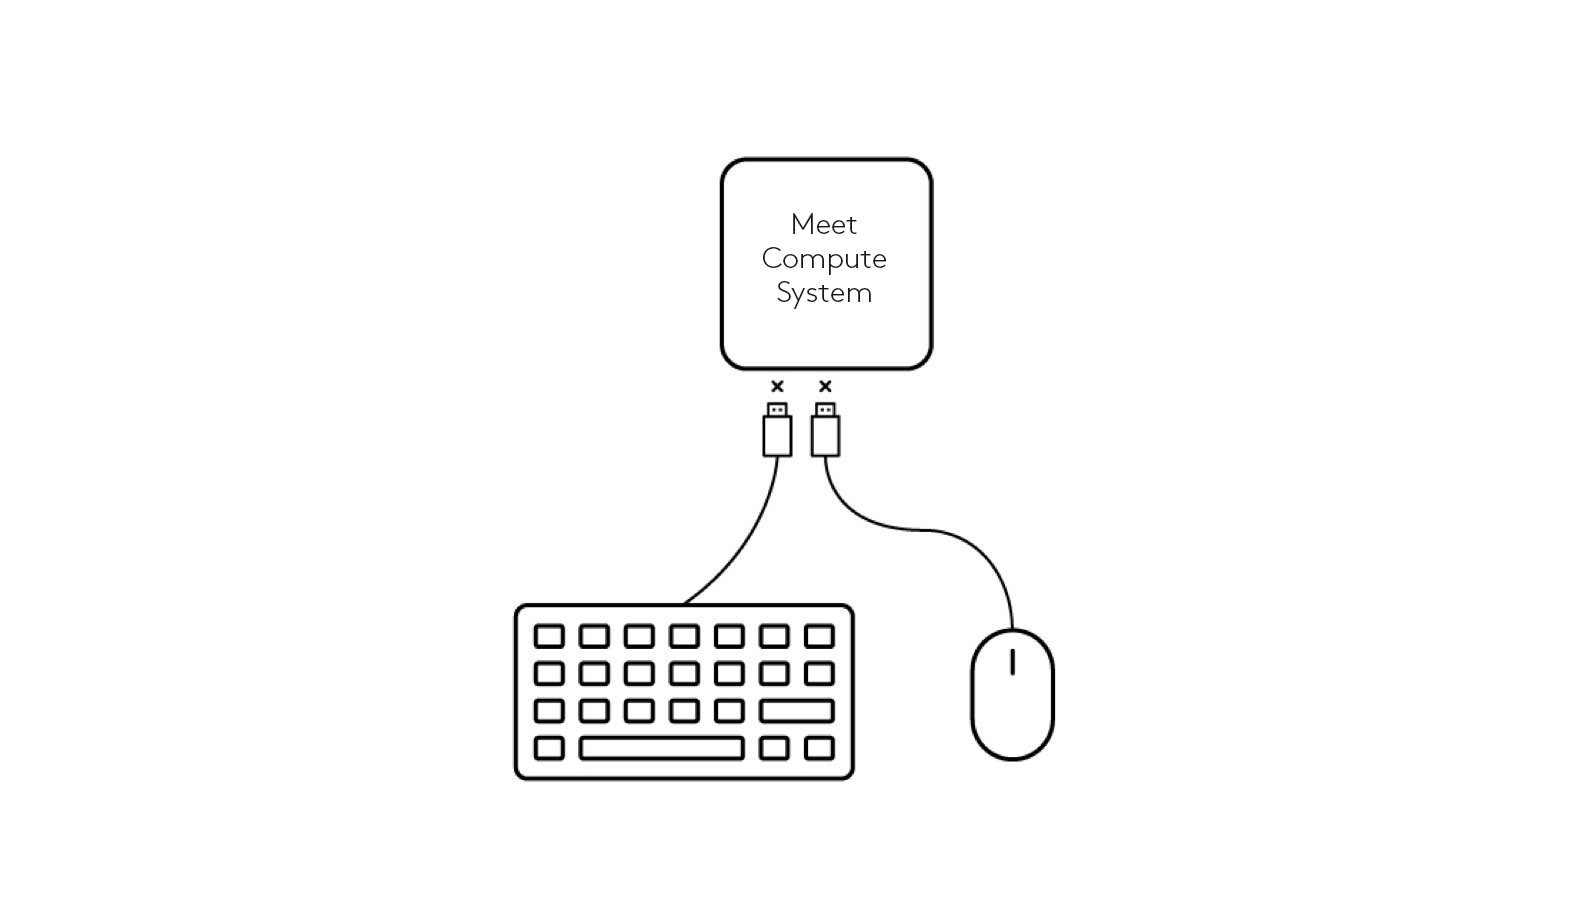 会议计算系统拔除键盘和鼠标的示意图